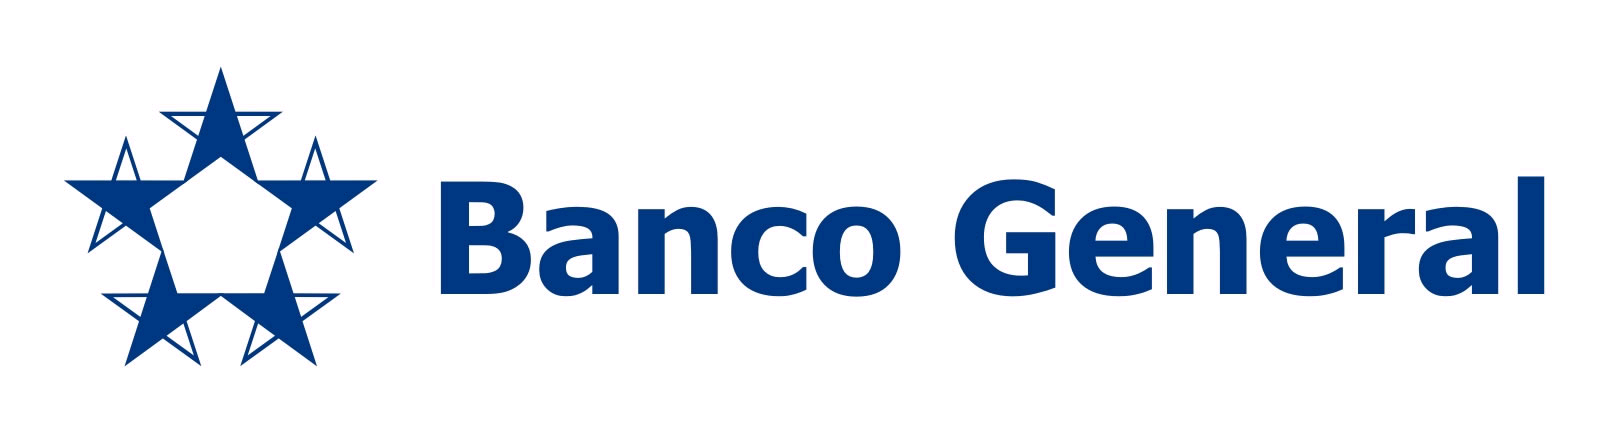 Banco General Costa Rica